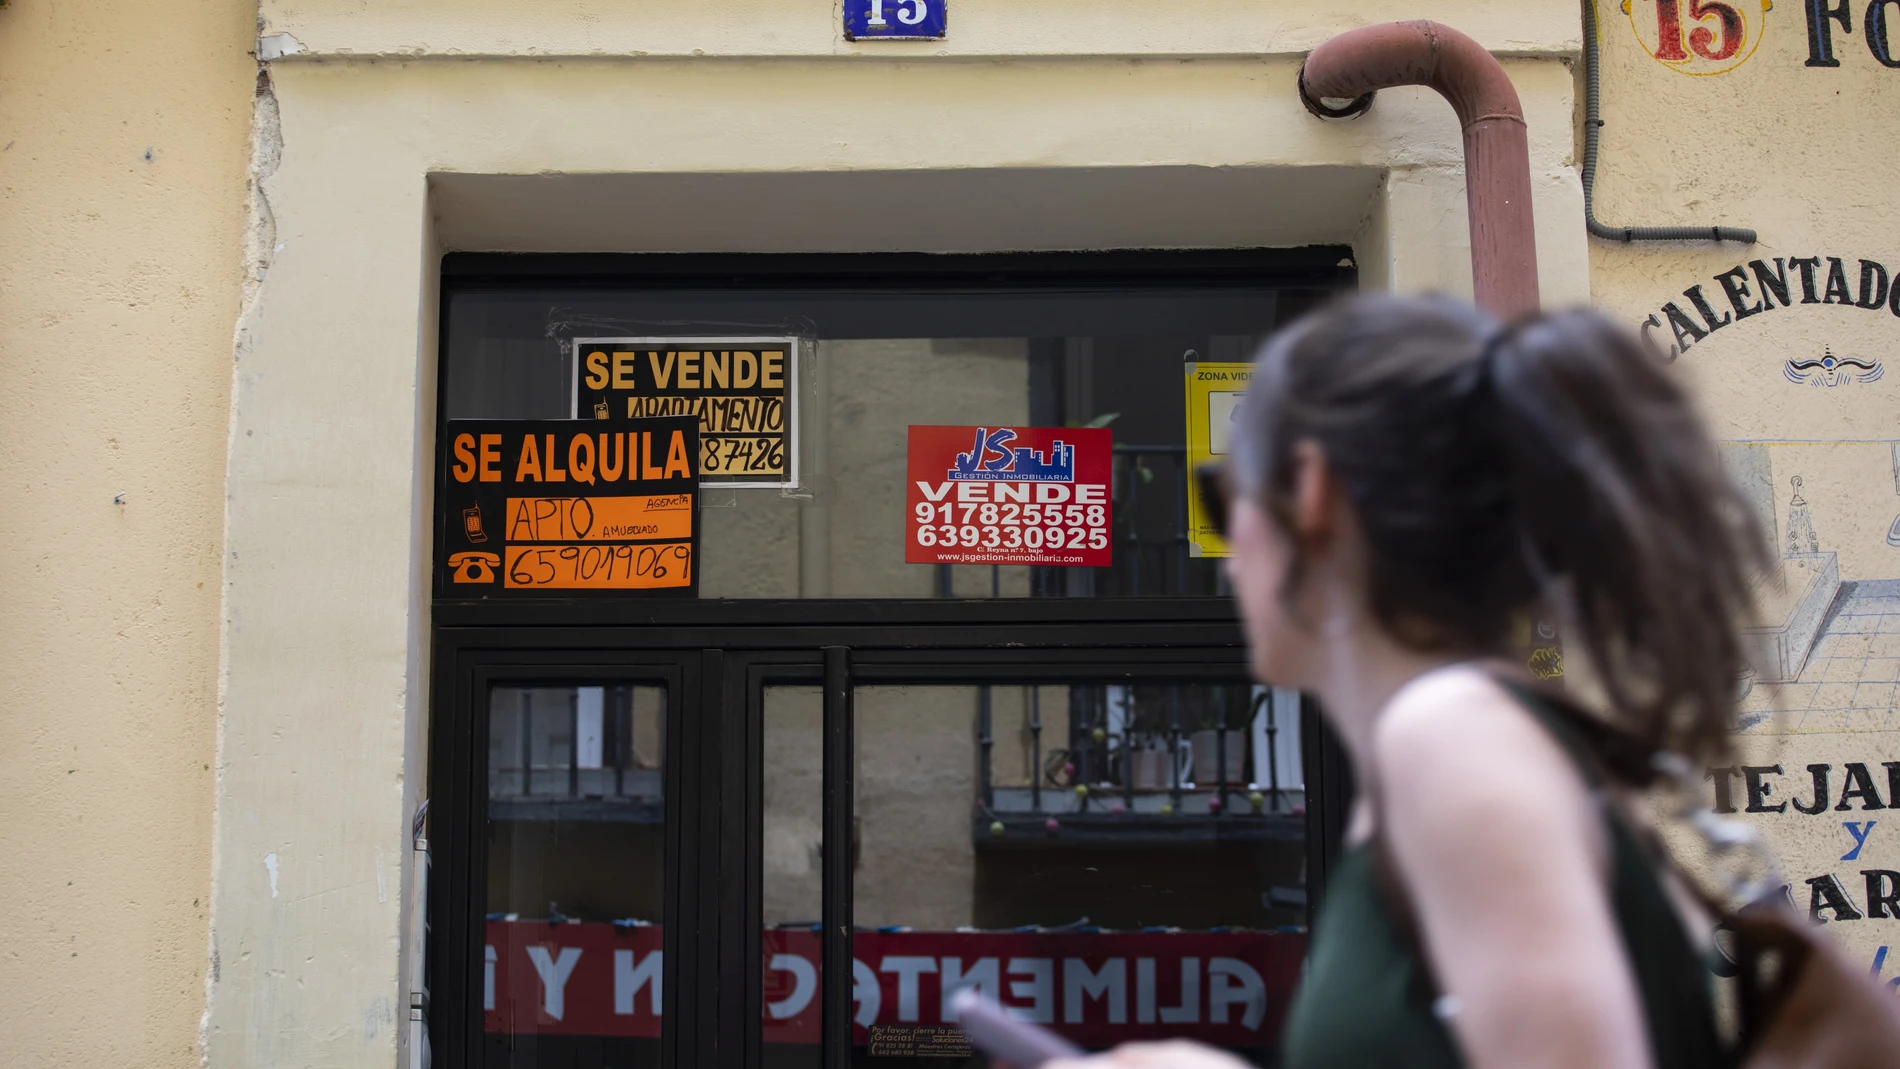 Cartel de "se vende" y "se alquila" en un edificio del centro de Madrid